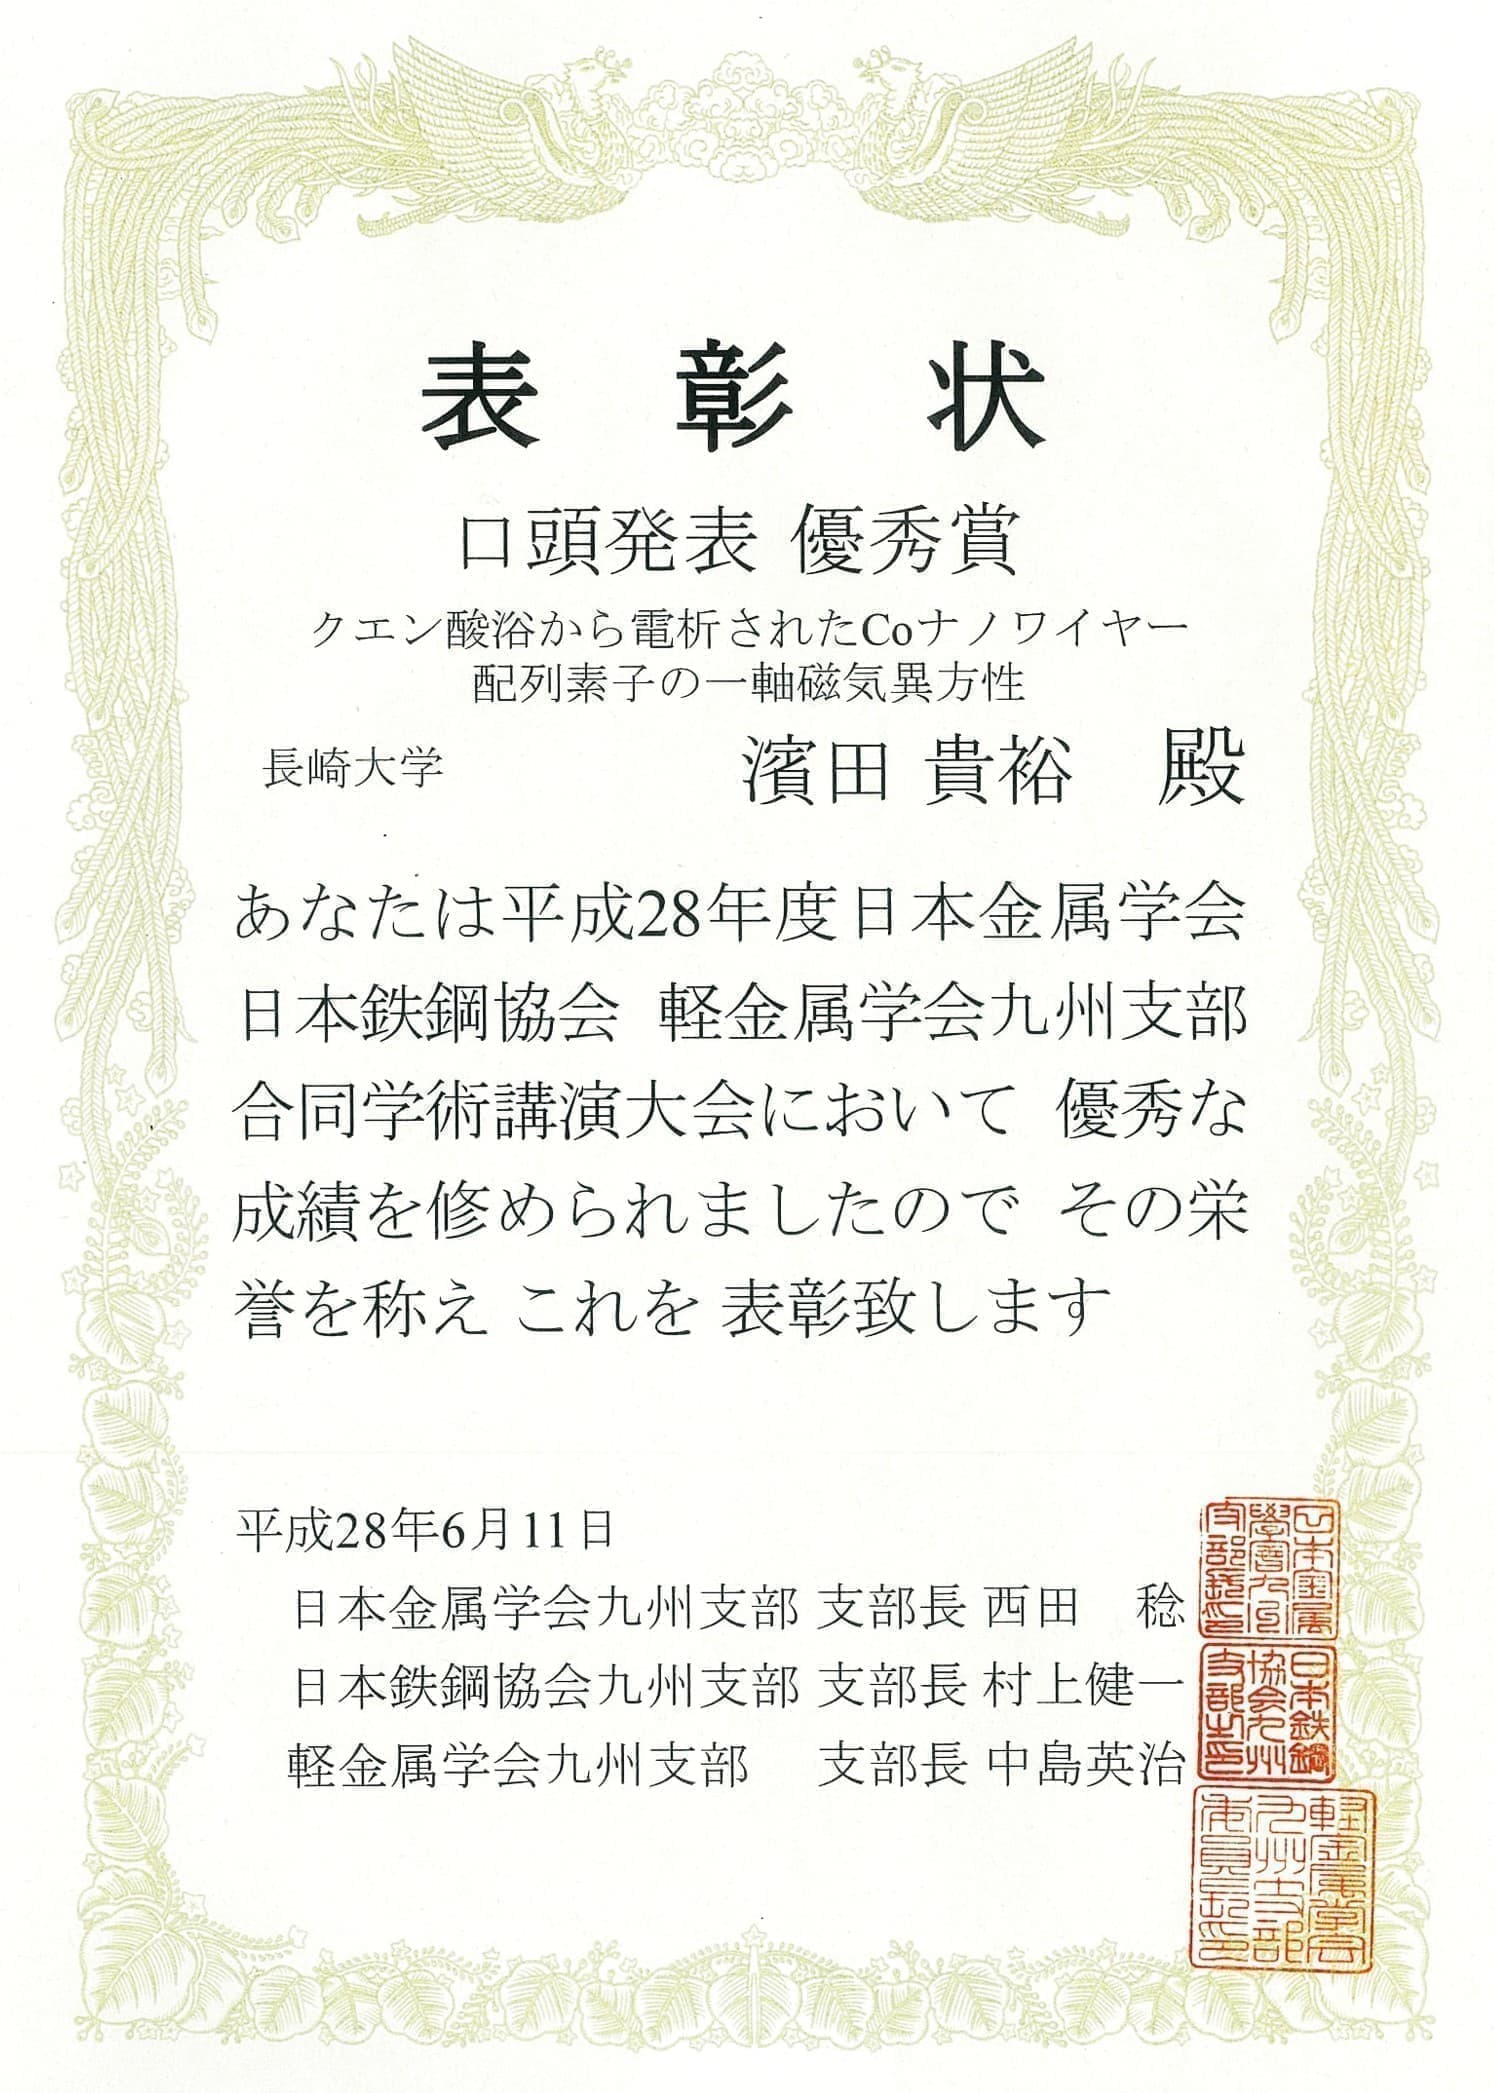 濱田貴裕君(M1)が、日本金属学会・日本鉄鋼協会・軽金属学会九州支部合同学術講演大会において、口頭発表優秀賞を受賞しました。2016/06/11